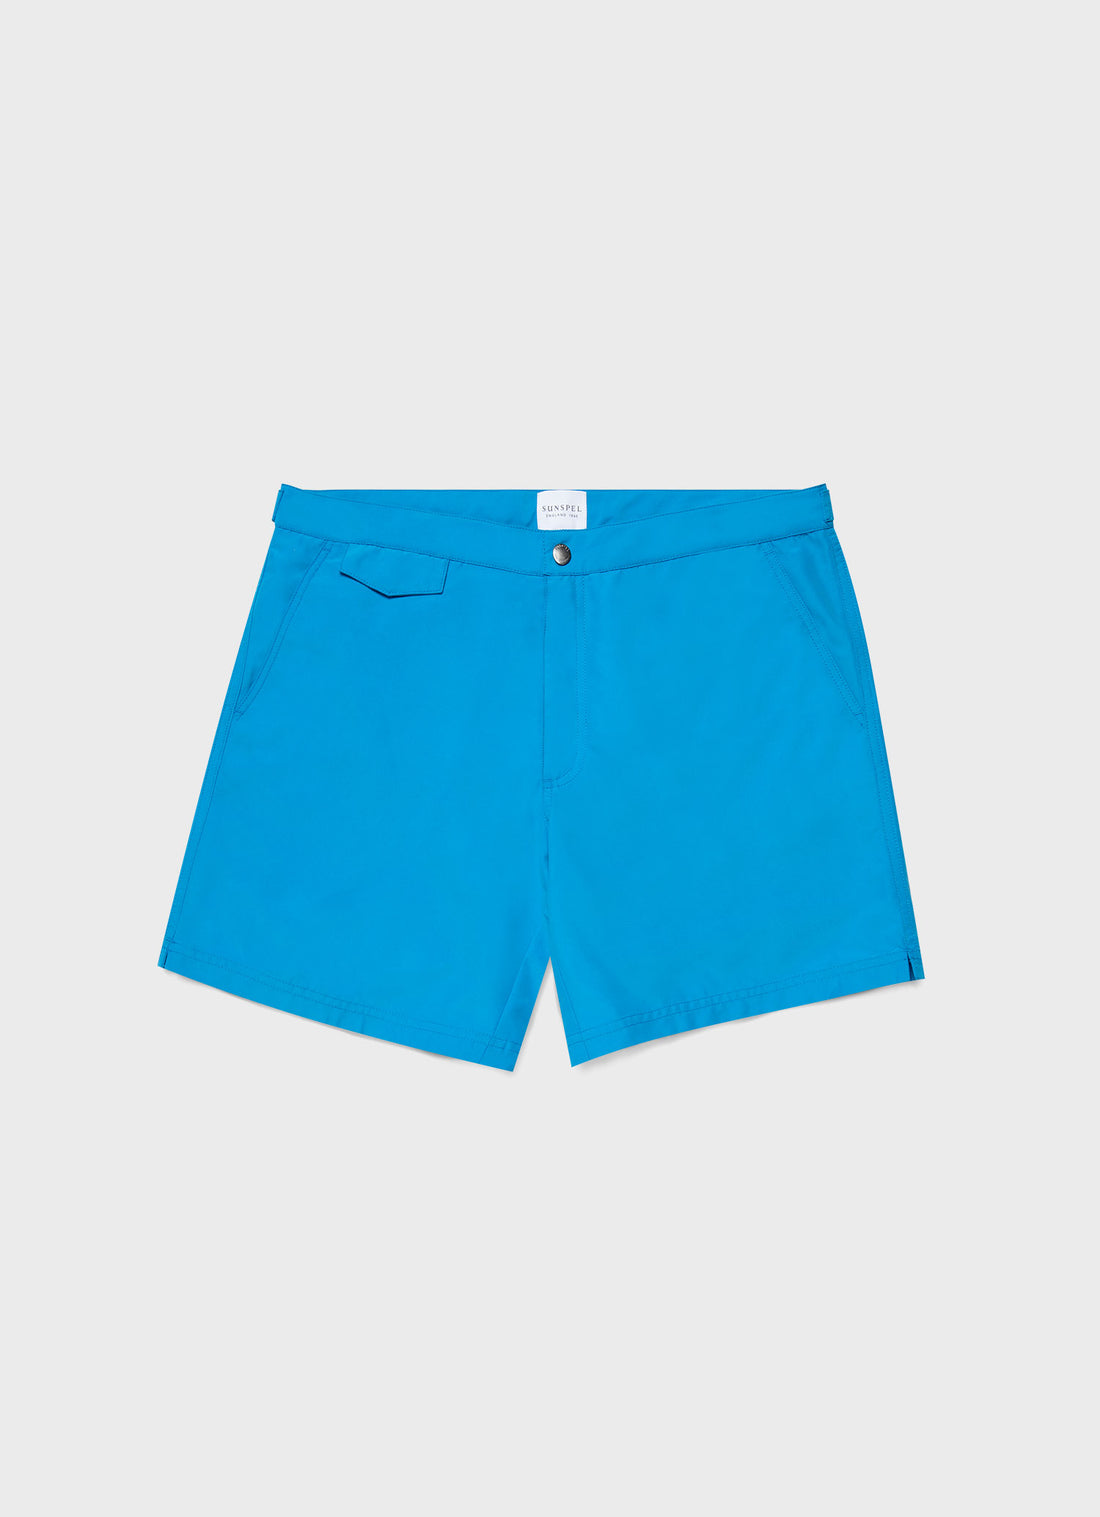 Men's Tailored Swim Short in Turquoise